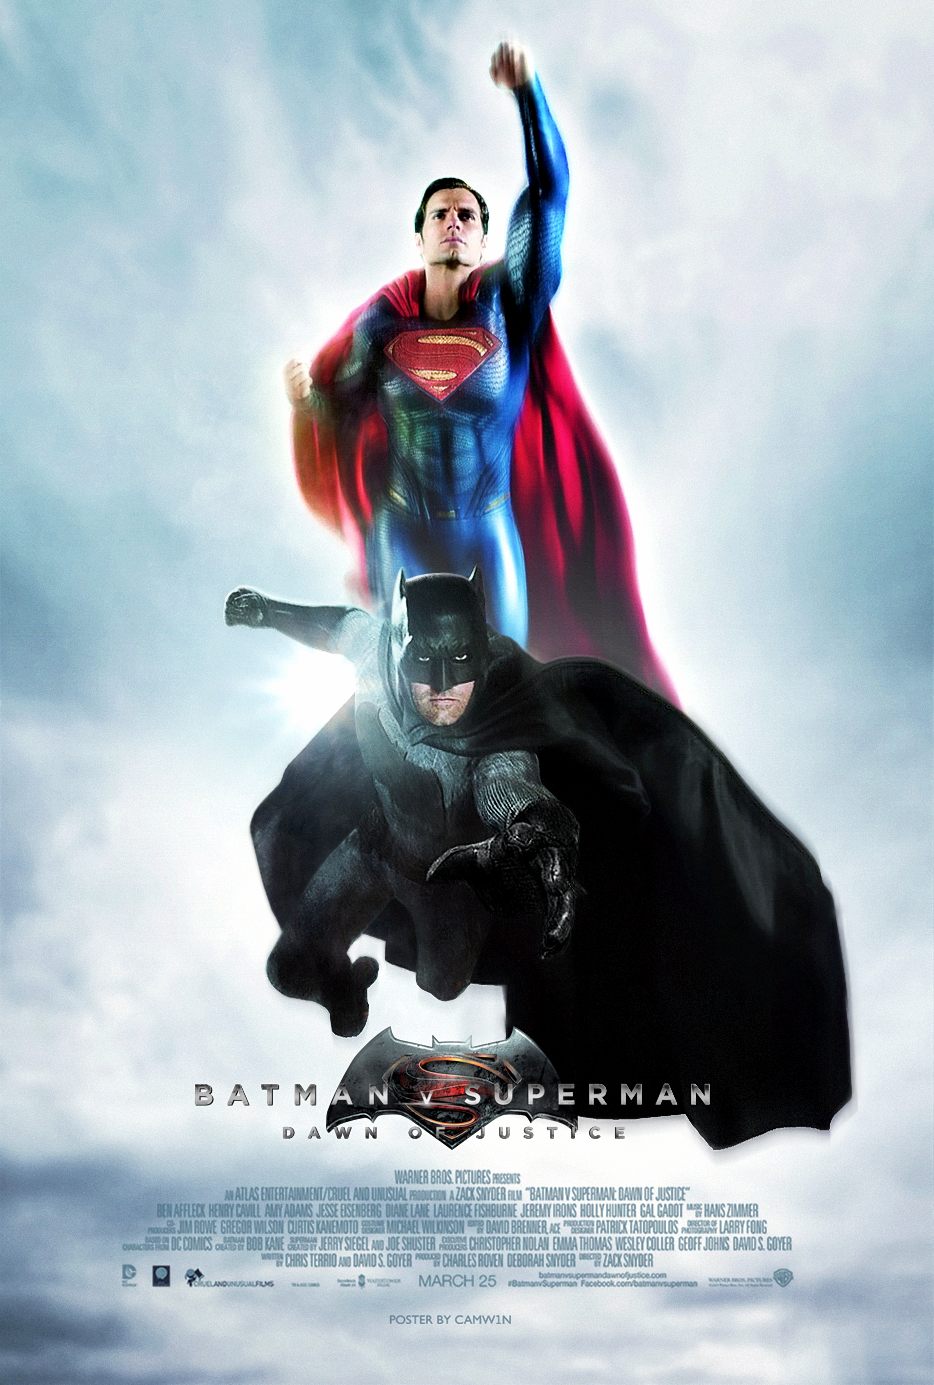 Batman v Superman: Dawn of Justice instal the new